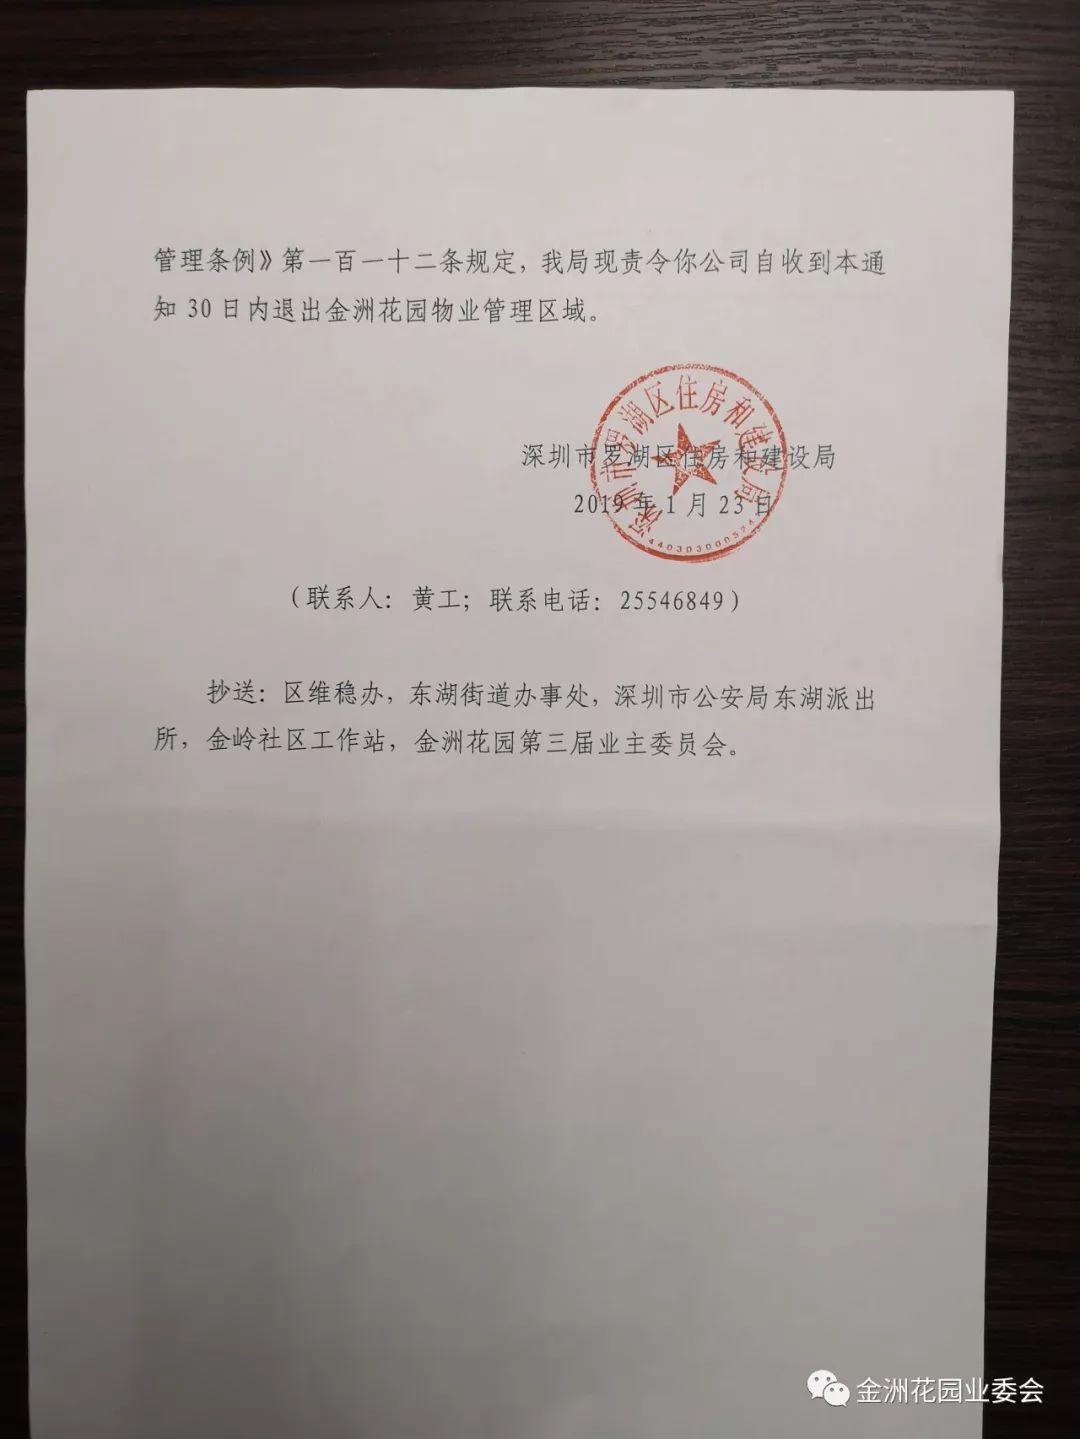 2019年深圳第一张责令退出函--金洲花园迎来自治胜利曙光